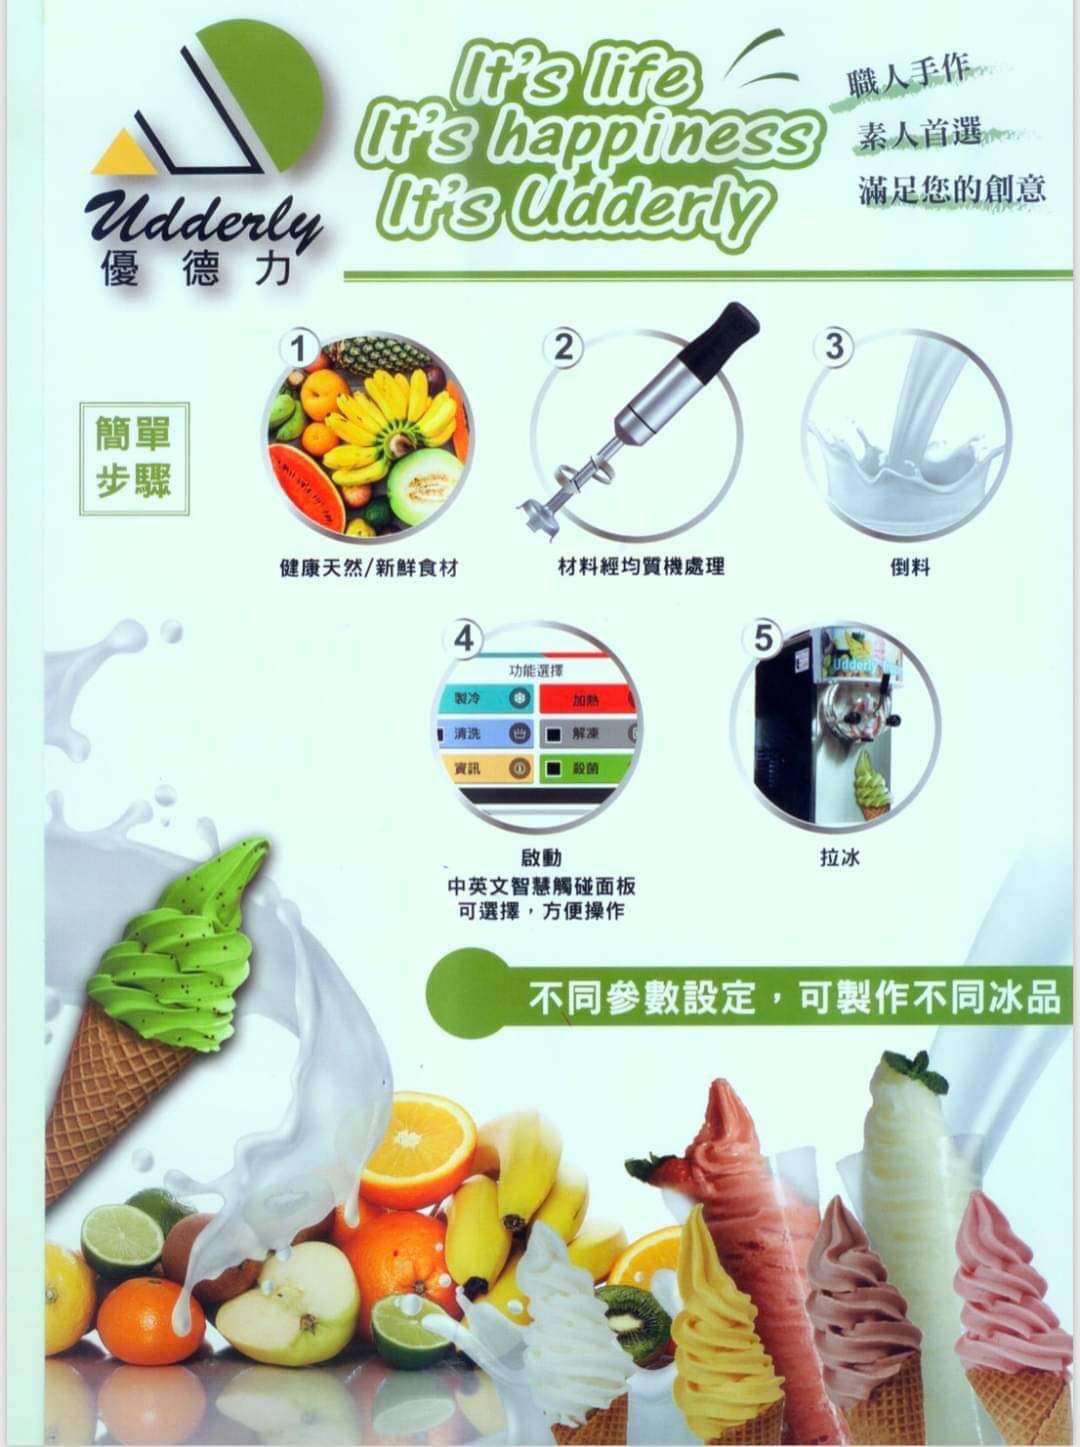 商用霜淇淋雪泥複合機促銷 - 20210408090112-844197451.jpeg(圖)